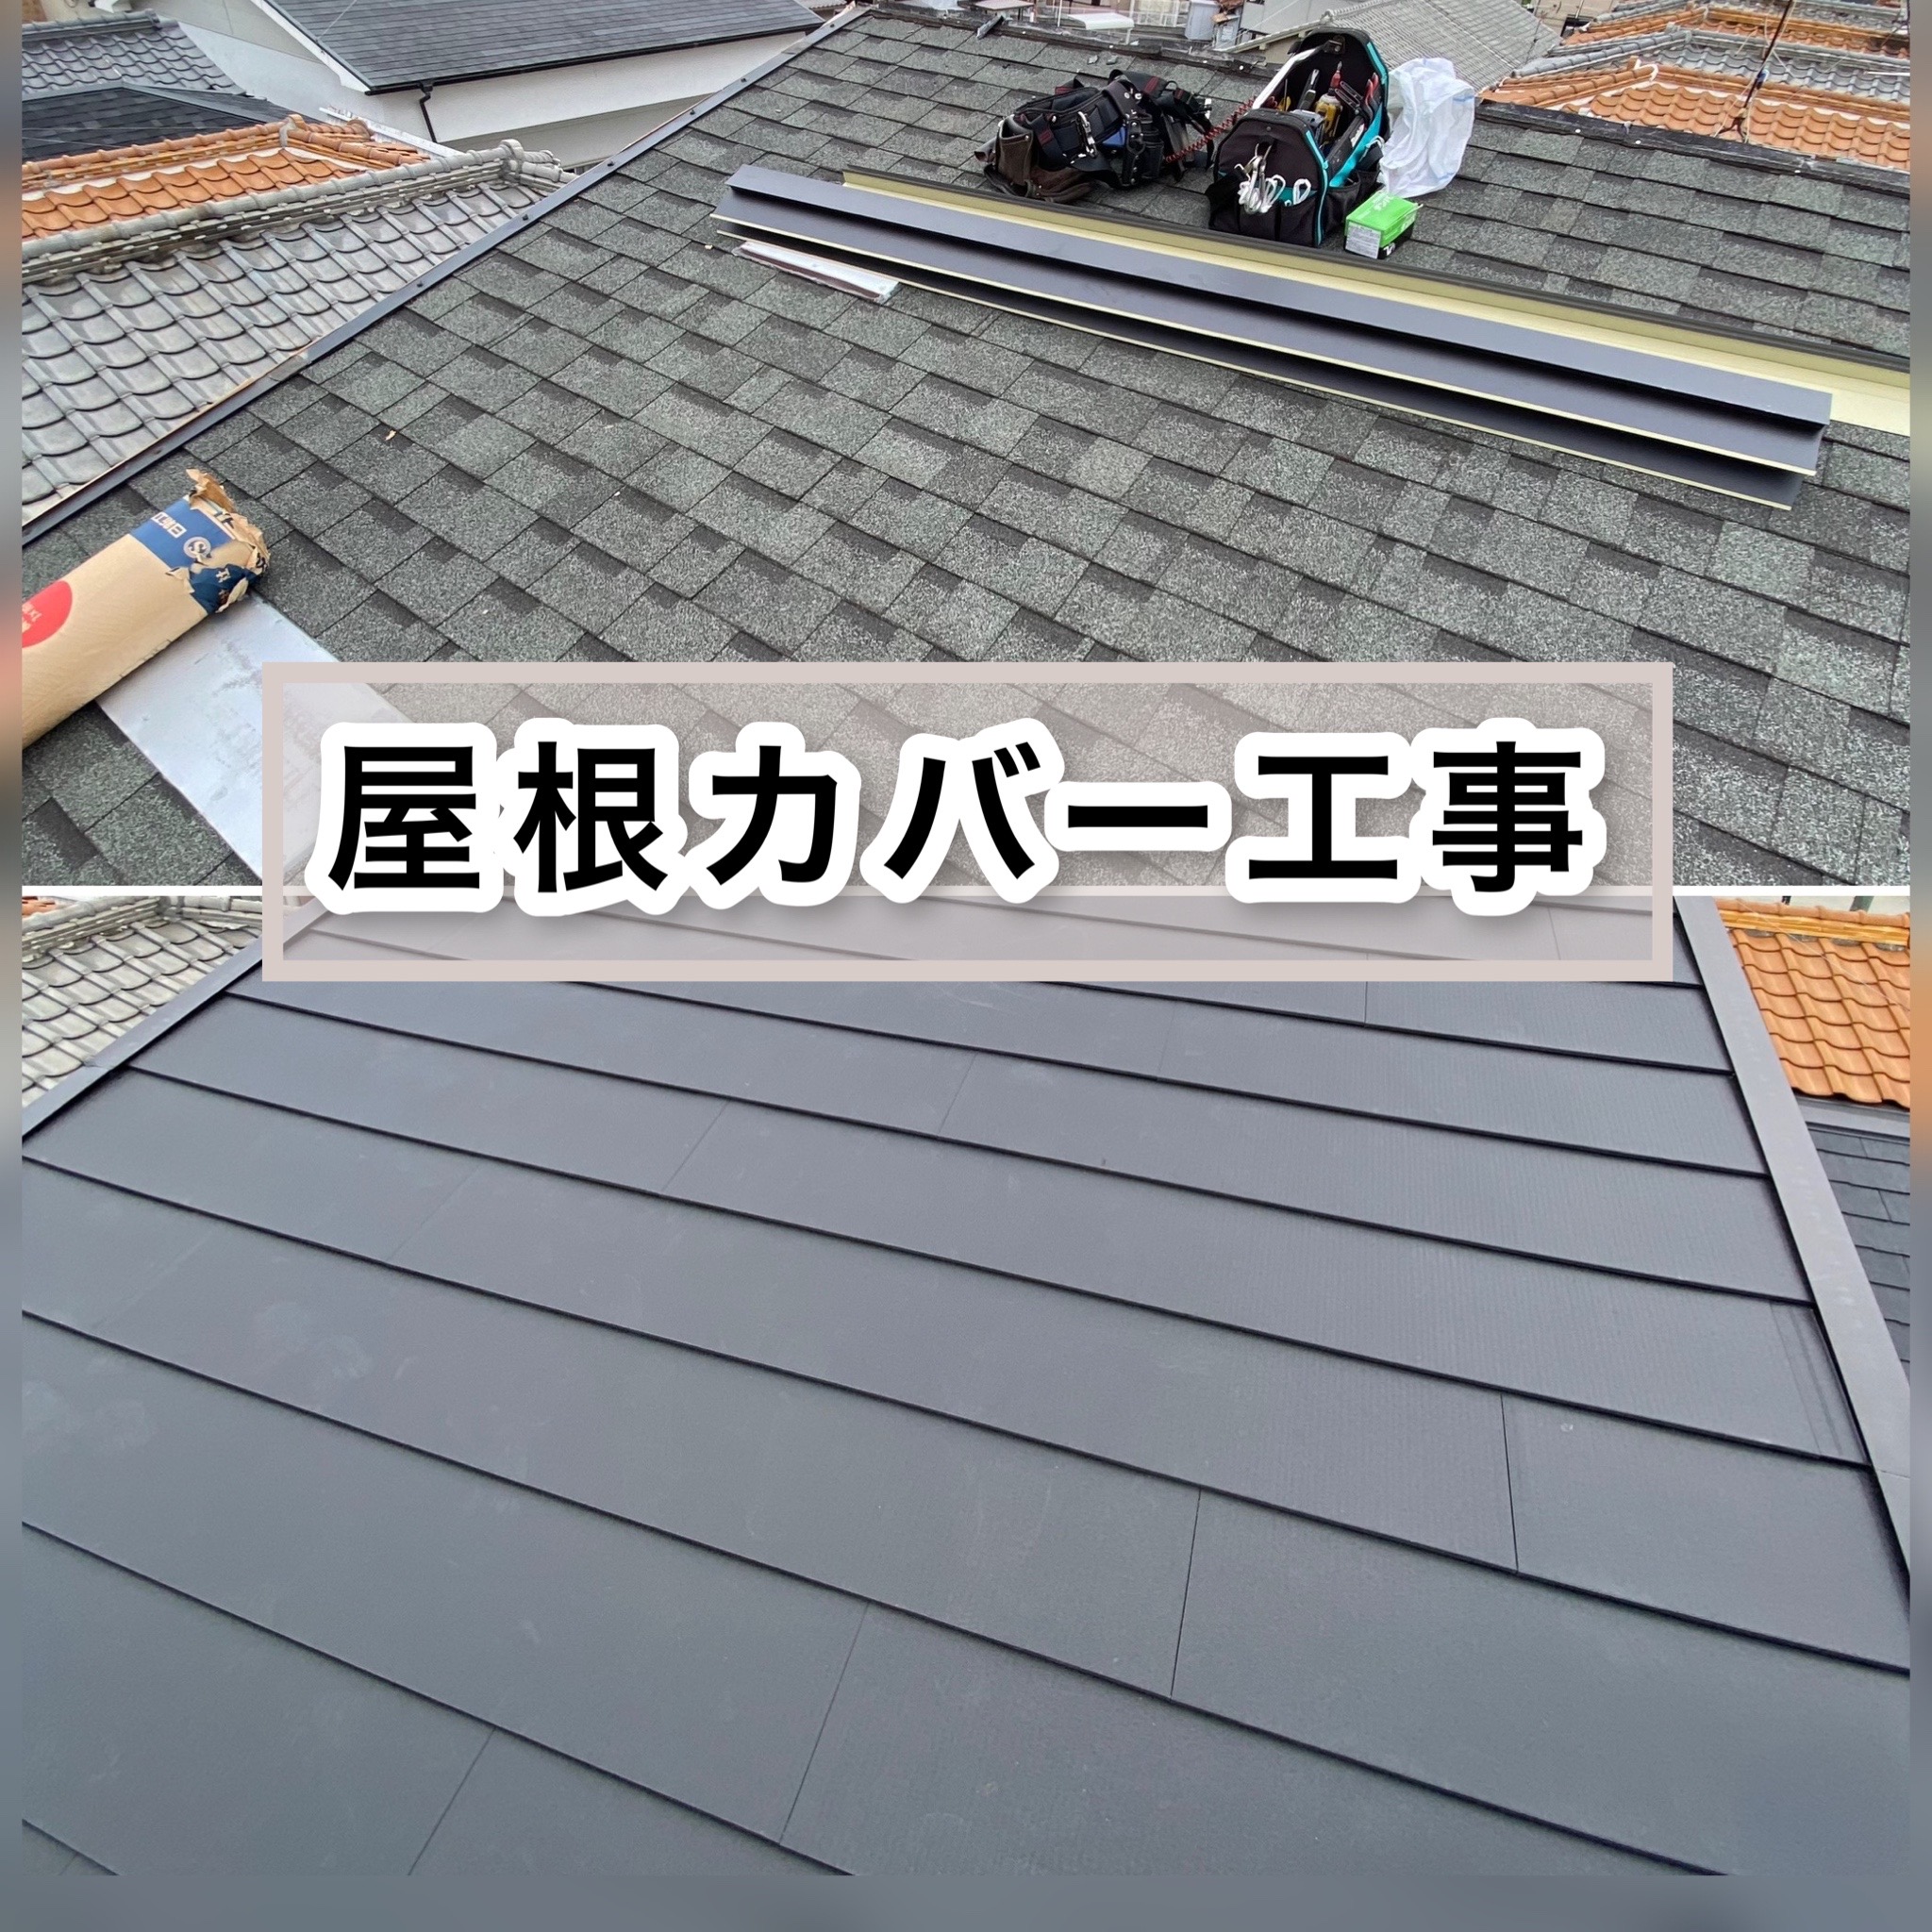 屋根カバー工事のイメージ画像